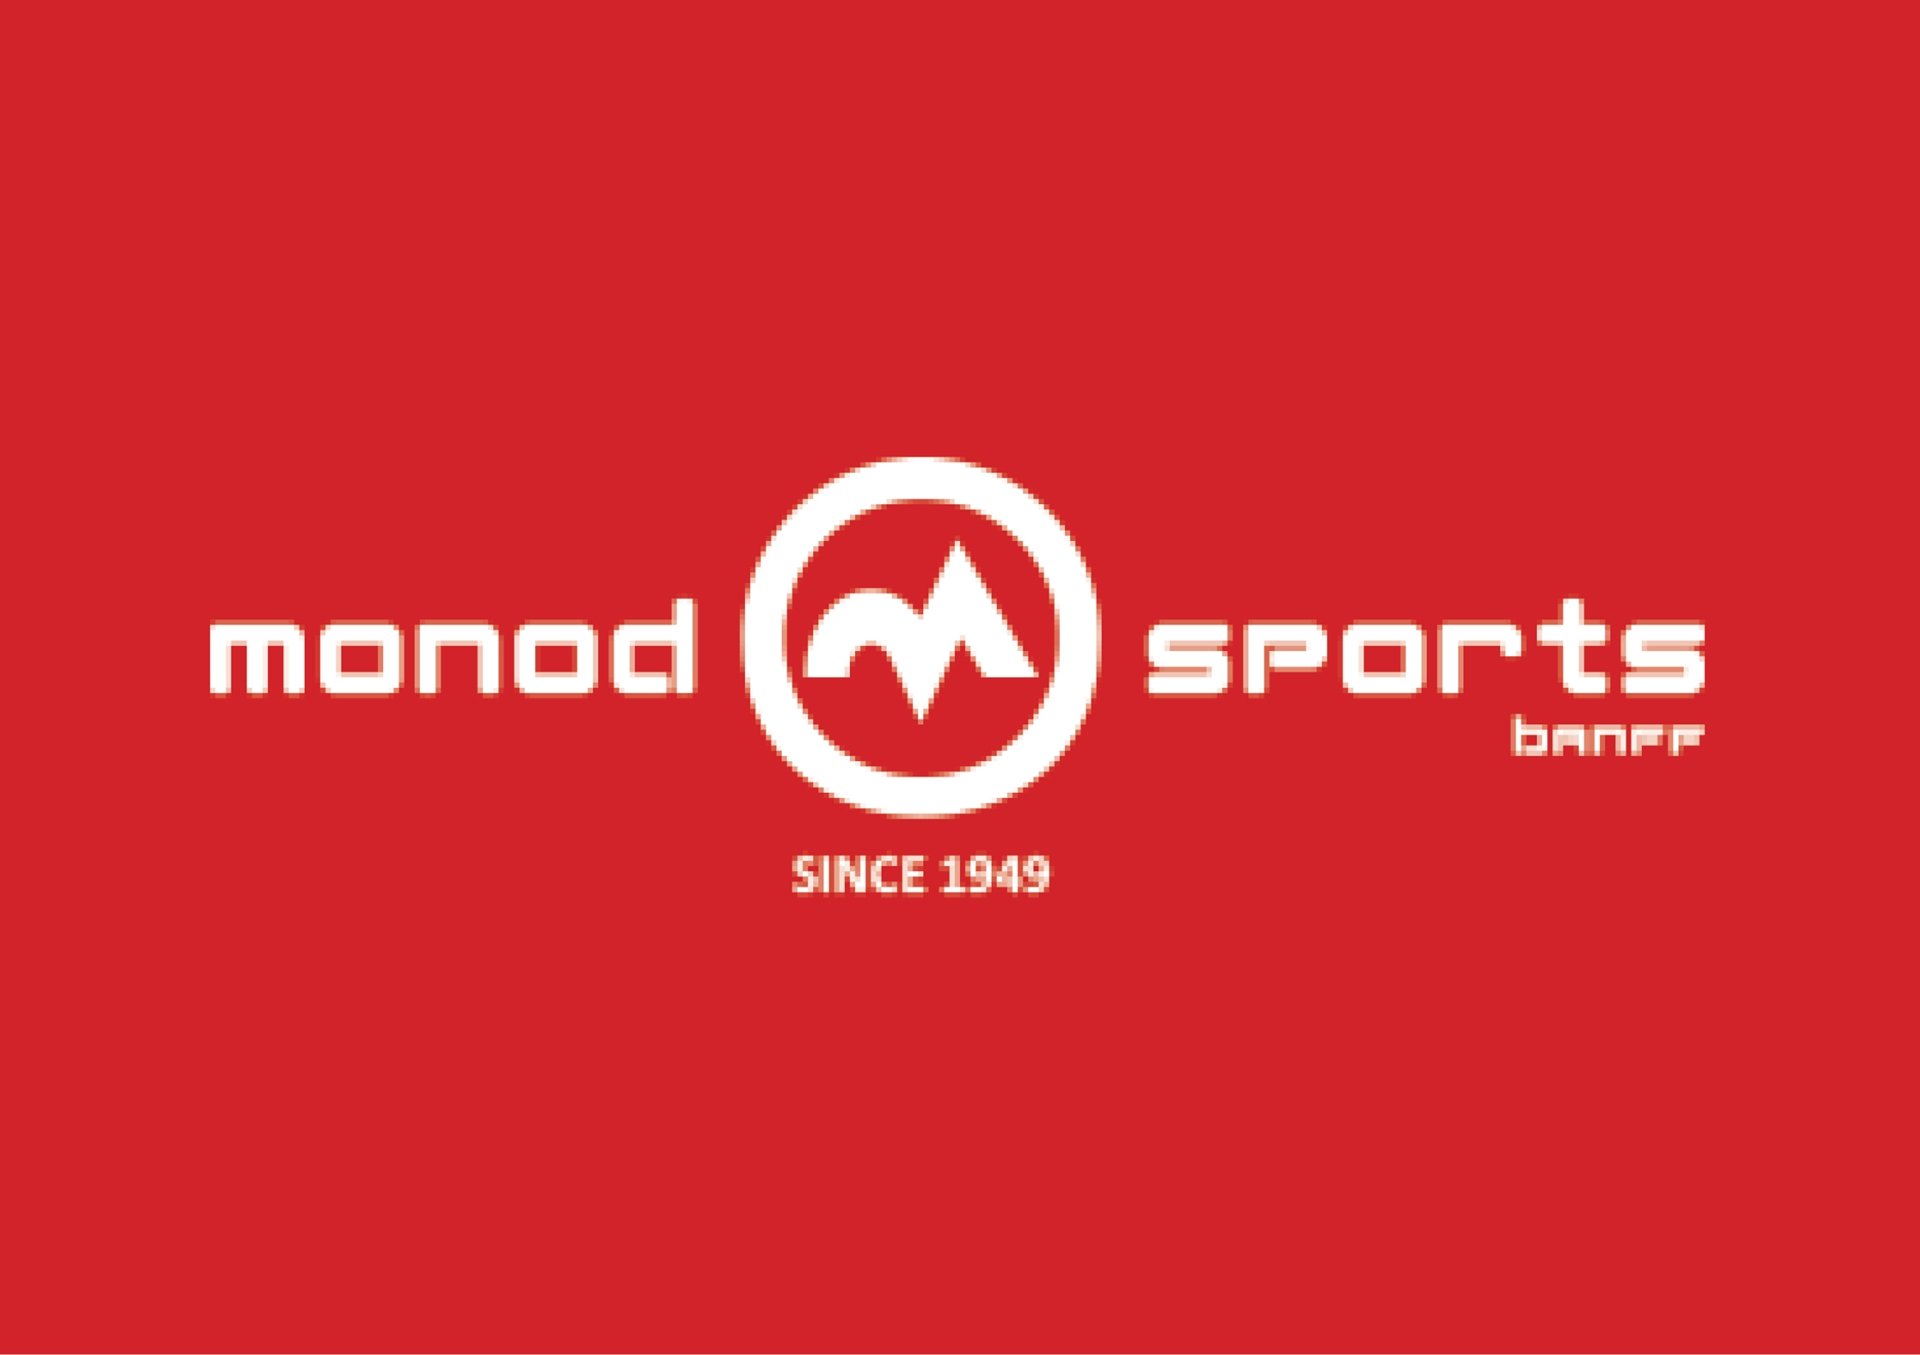 monod sports logo